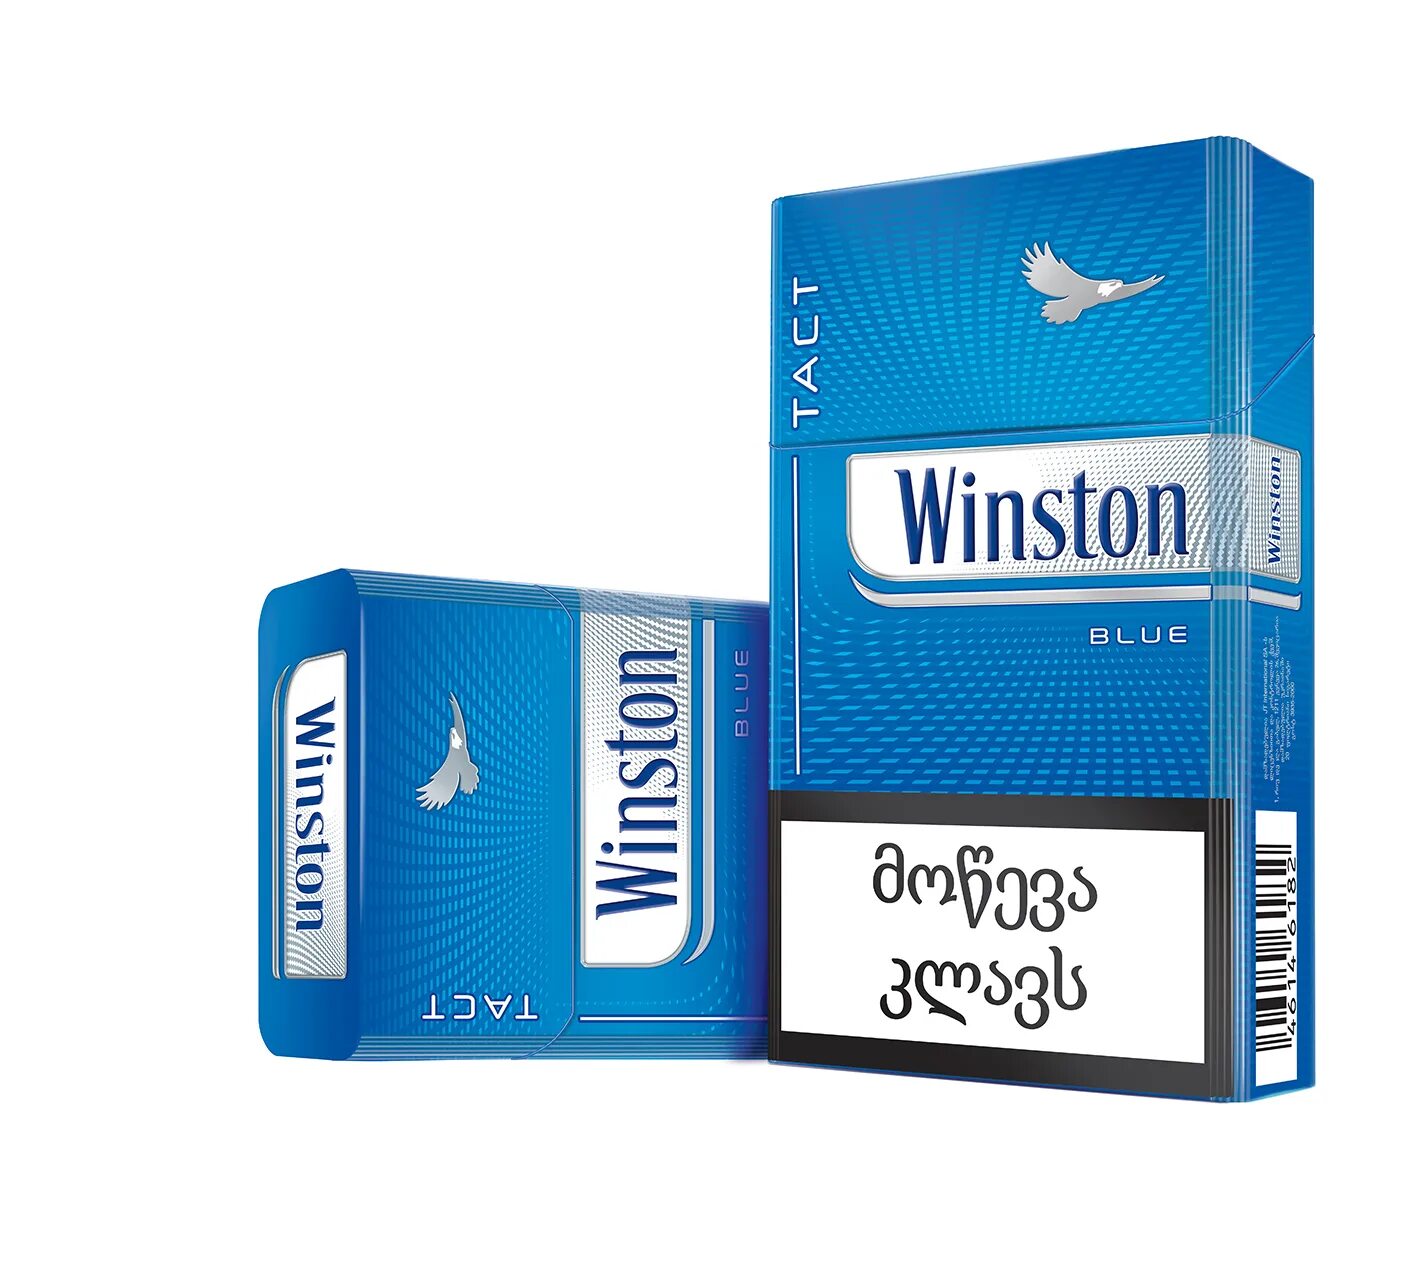 Винстон с ментолом компакт. Винстон компакт Блю. Winston XS Compact. Винстон синий компакт 100. Сигареты Винстон тонкие синие.